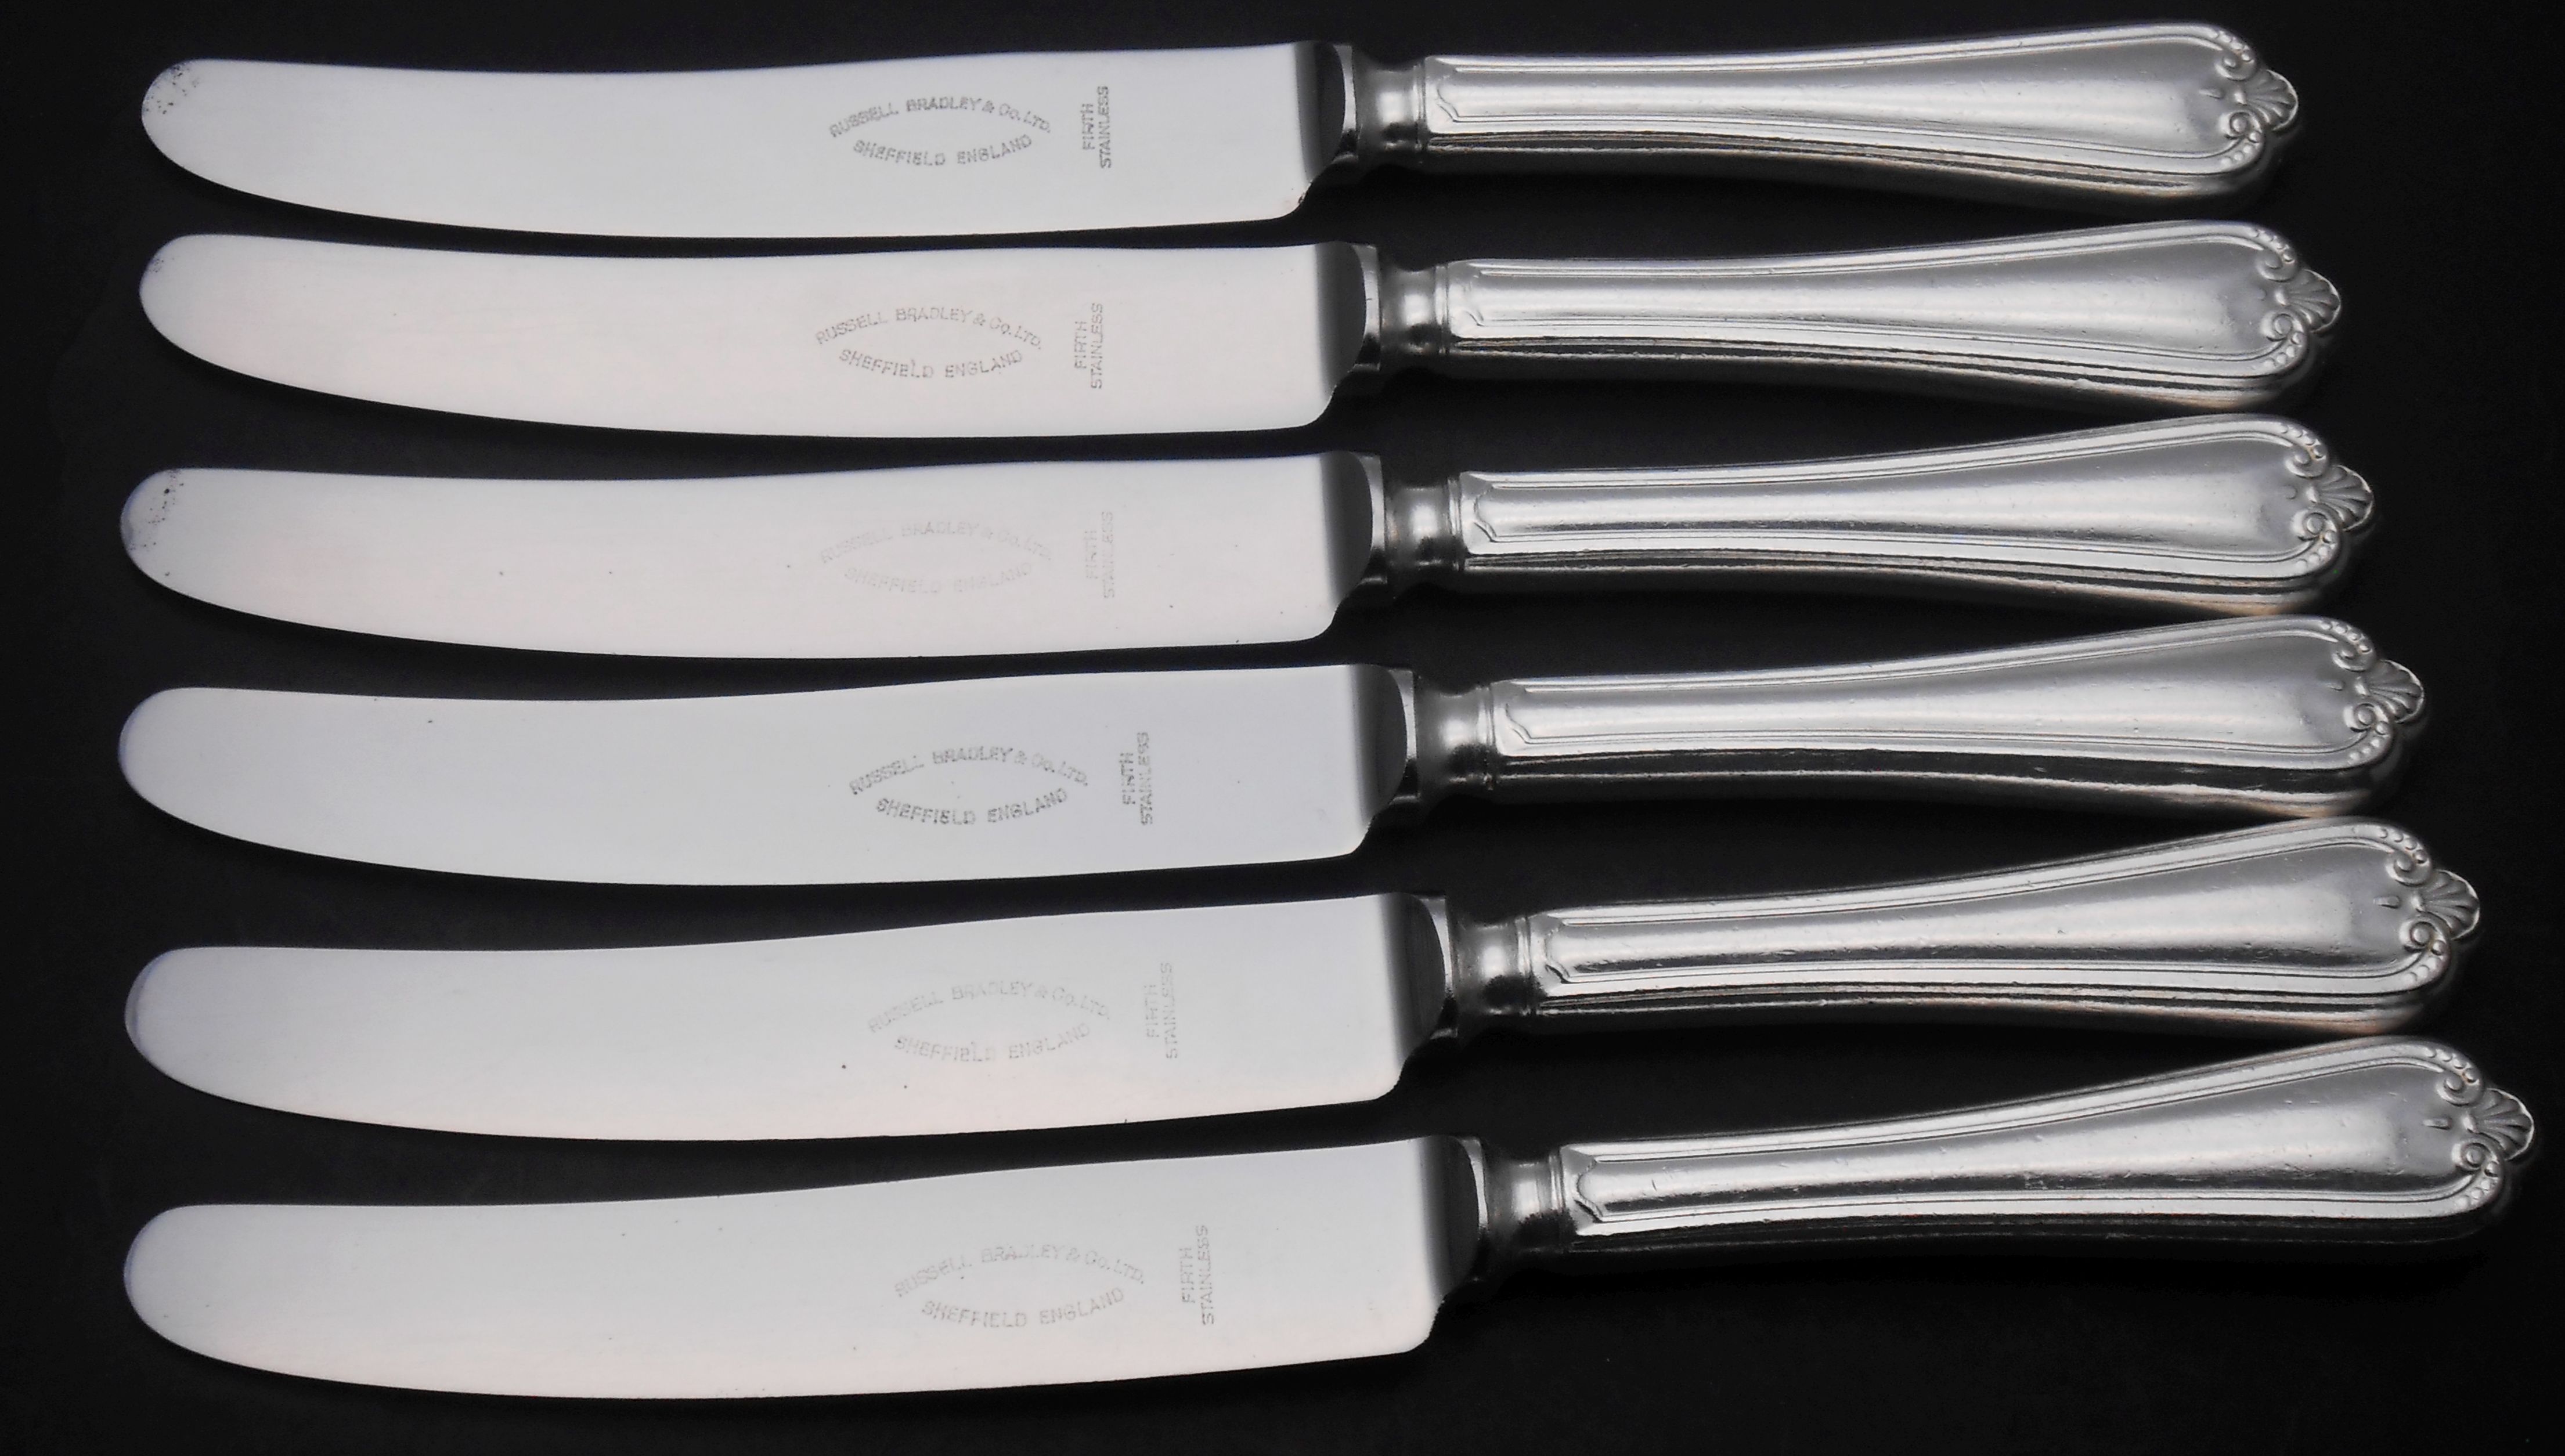 Jesmond pattern cutlery / flatware